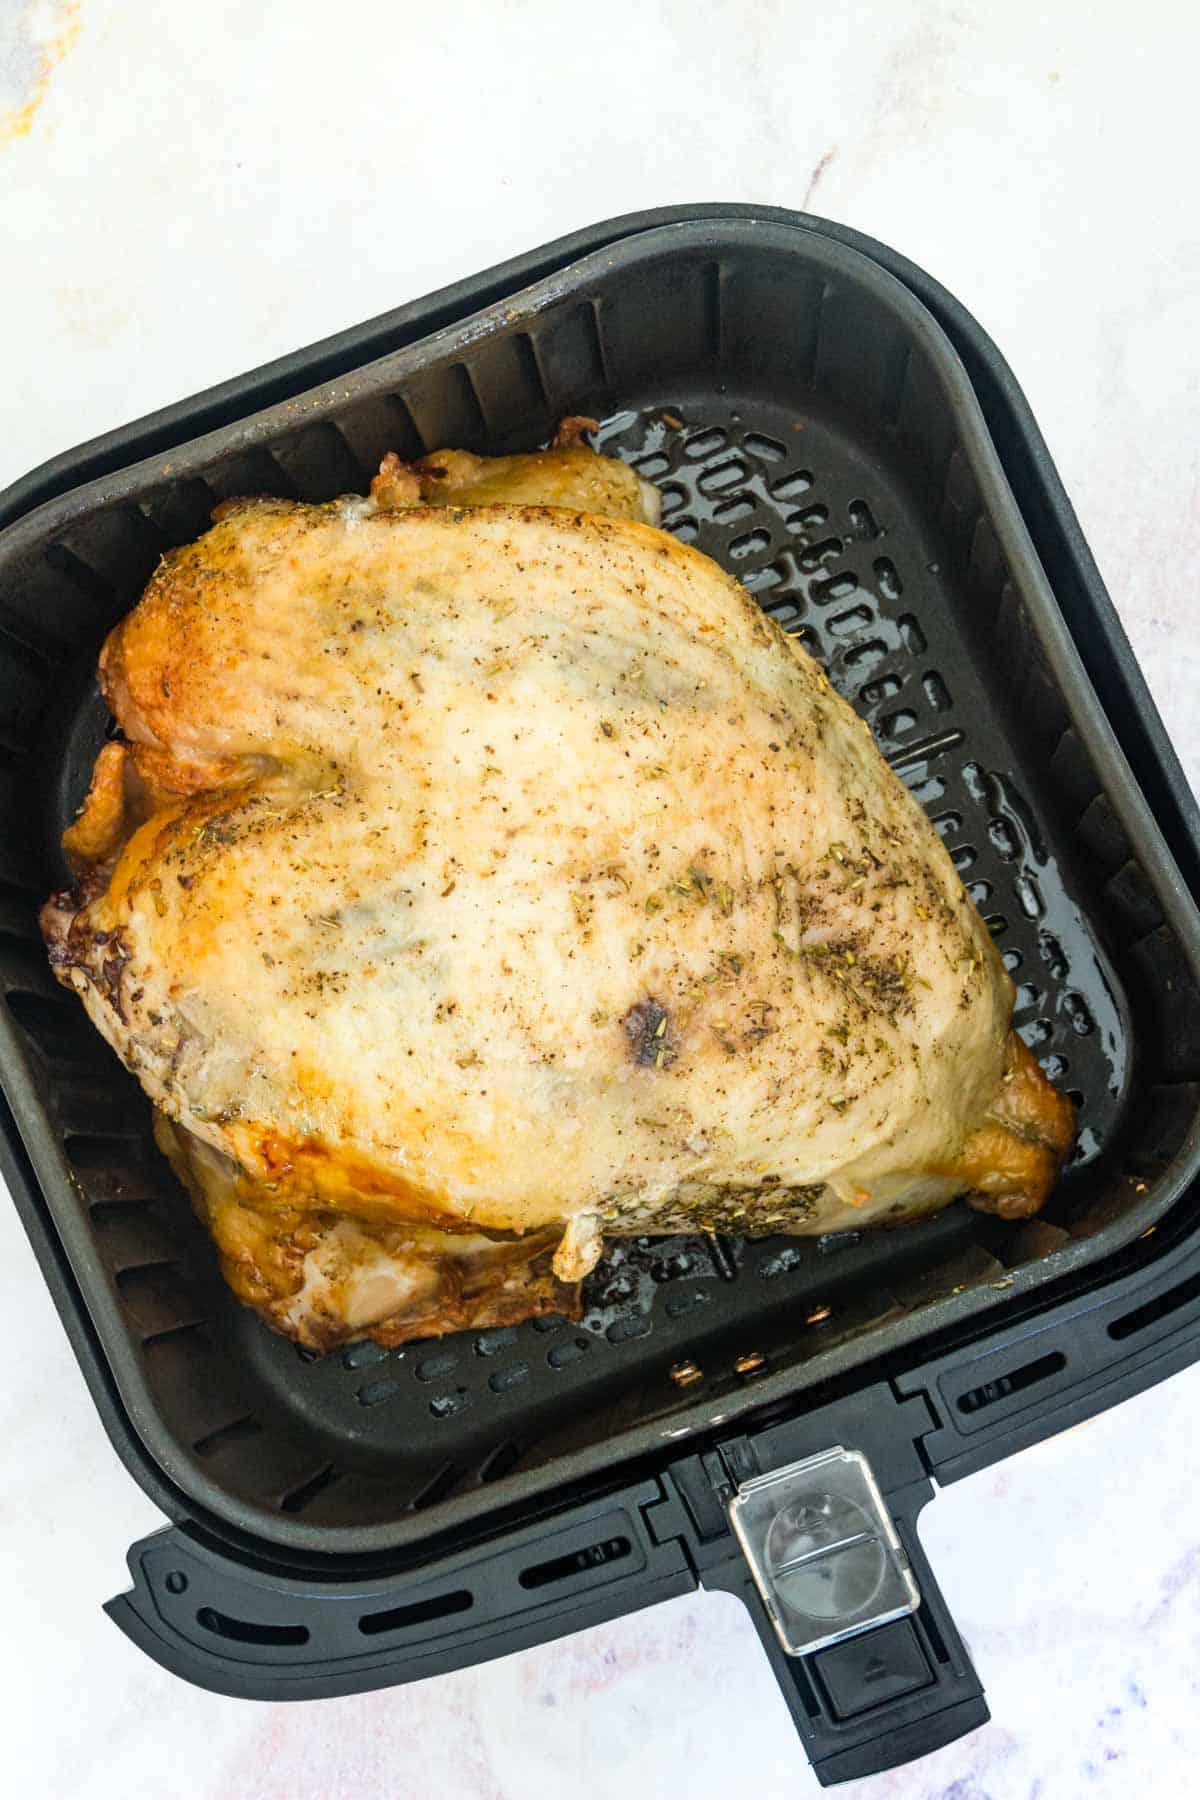 Roast turkey breast inside the basket of an air fryer.